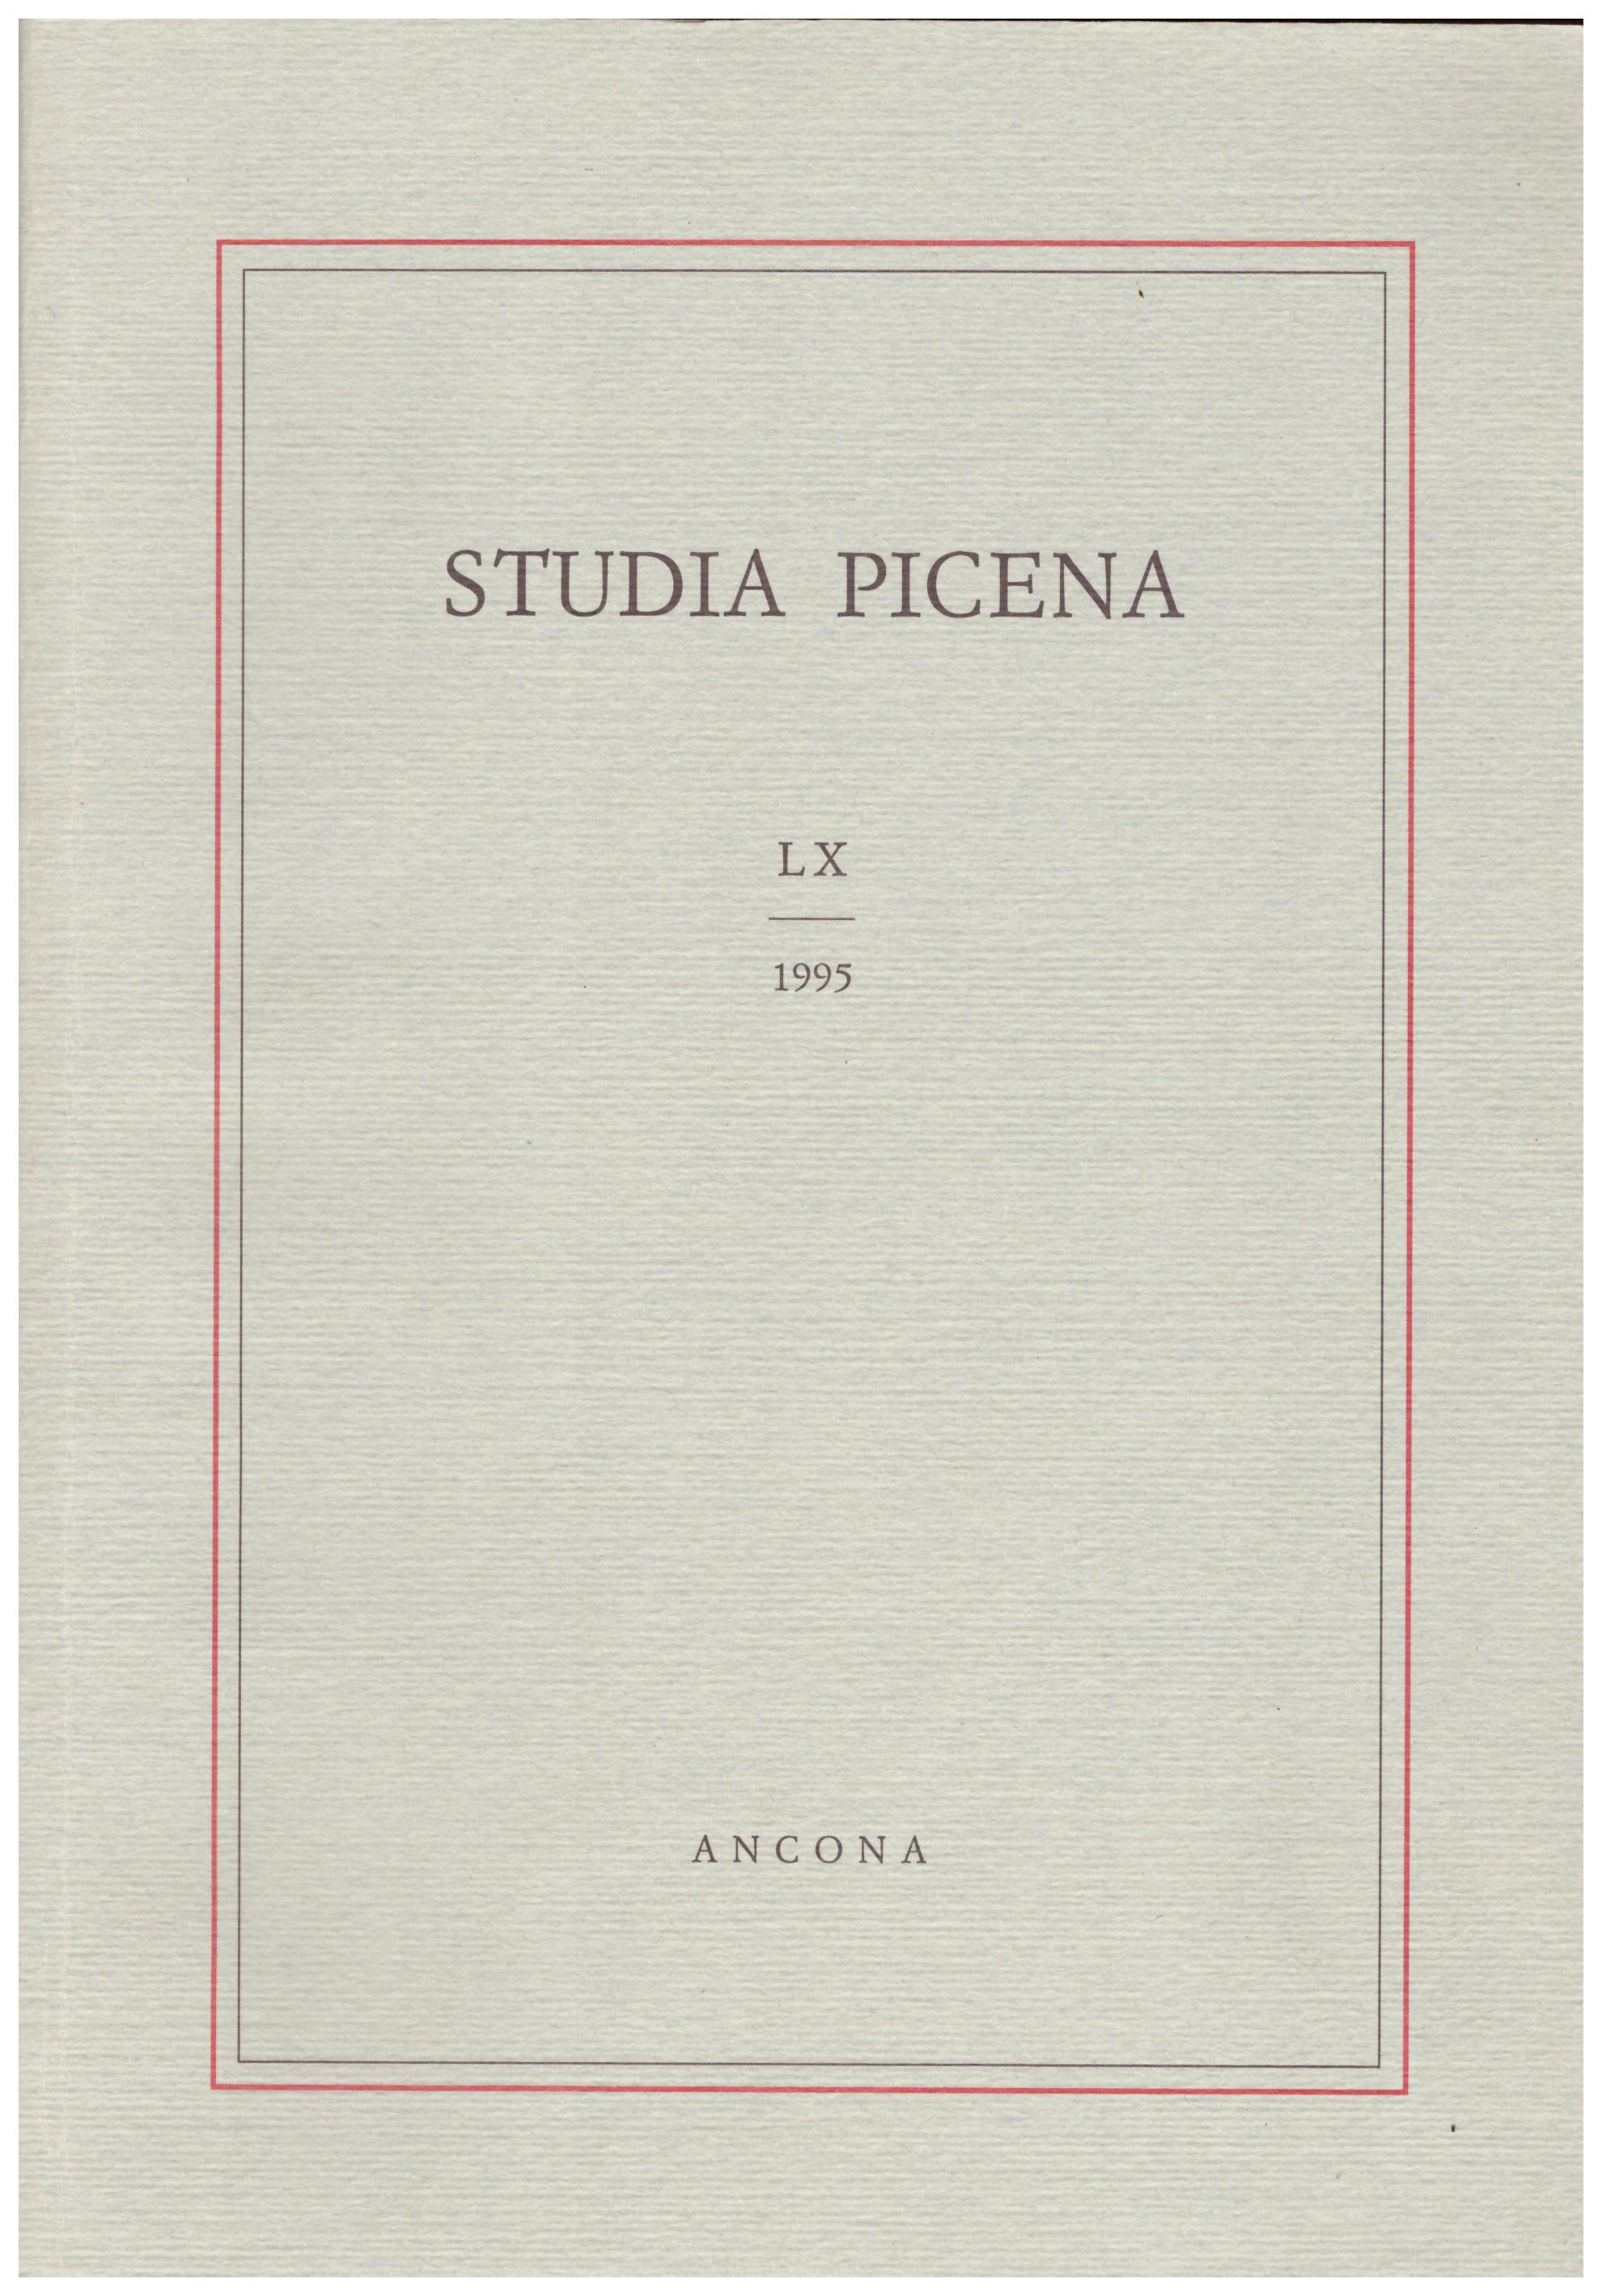 Titolo: Studia picena LX 1995  Autore : AA.VV. Editore: Istituto teologico marchigiano Ancona, conerografica 1996